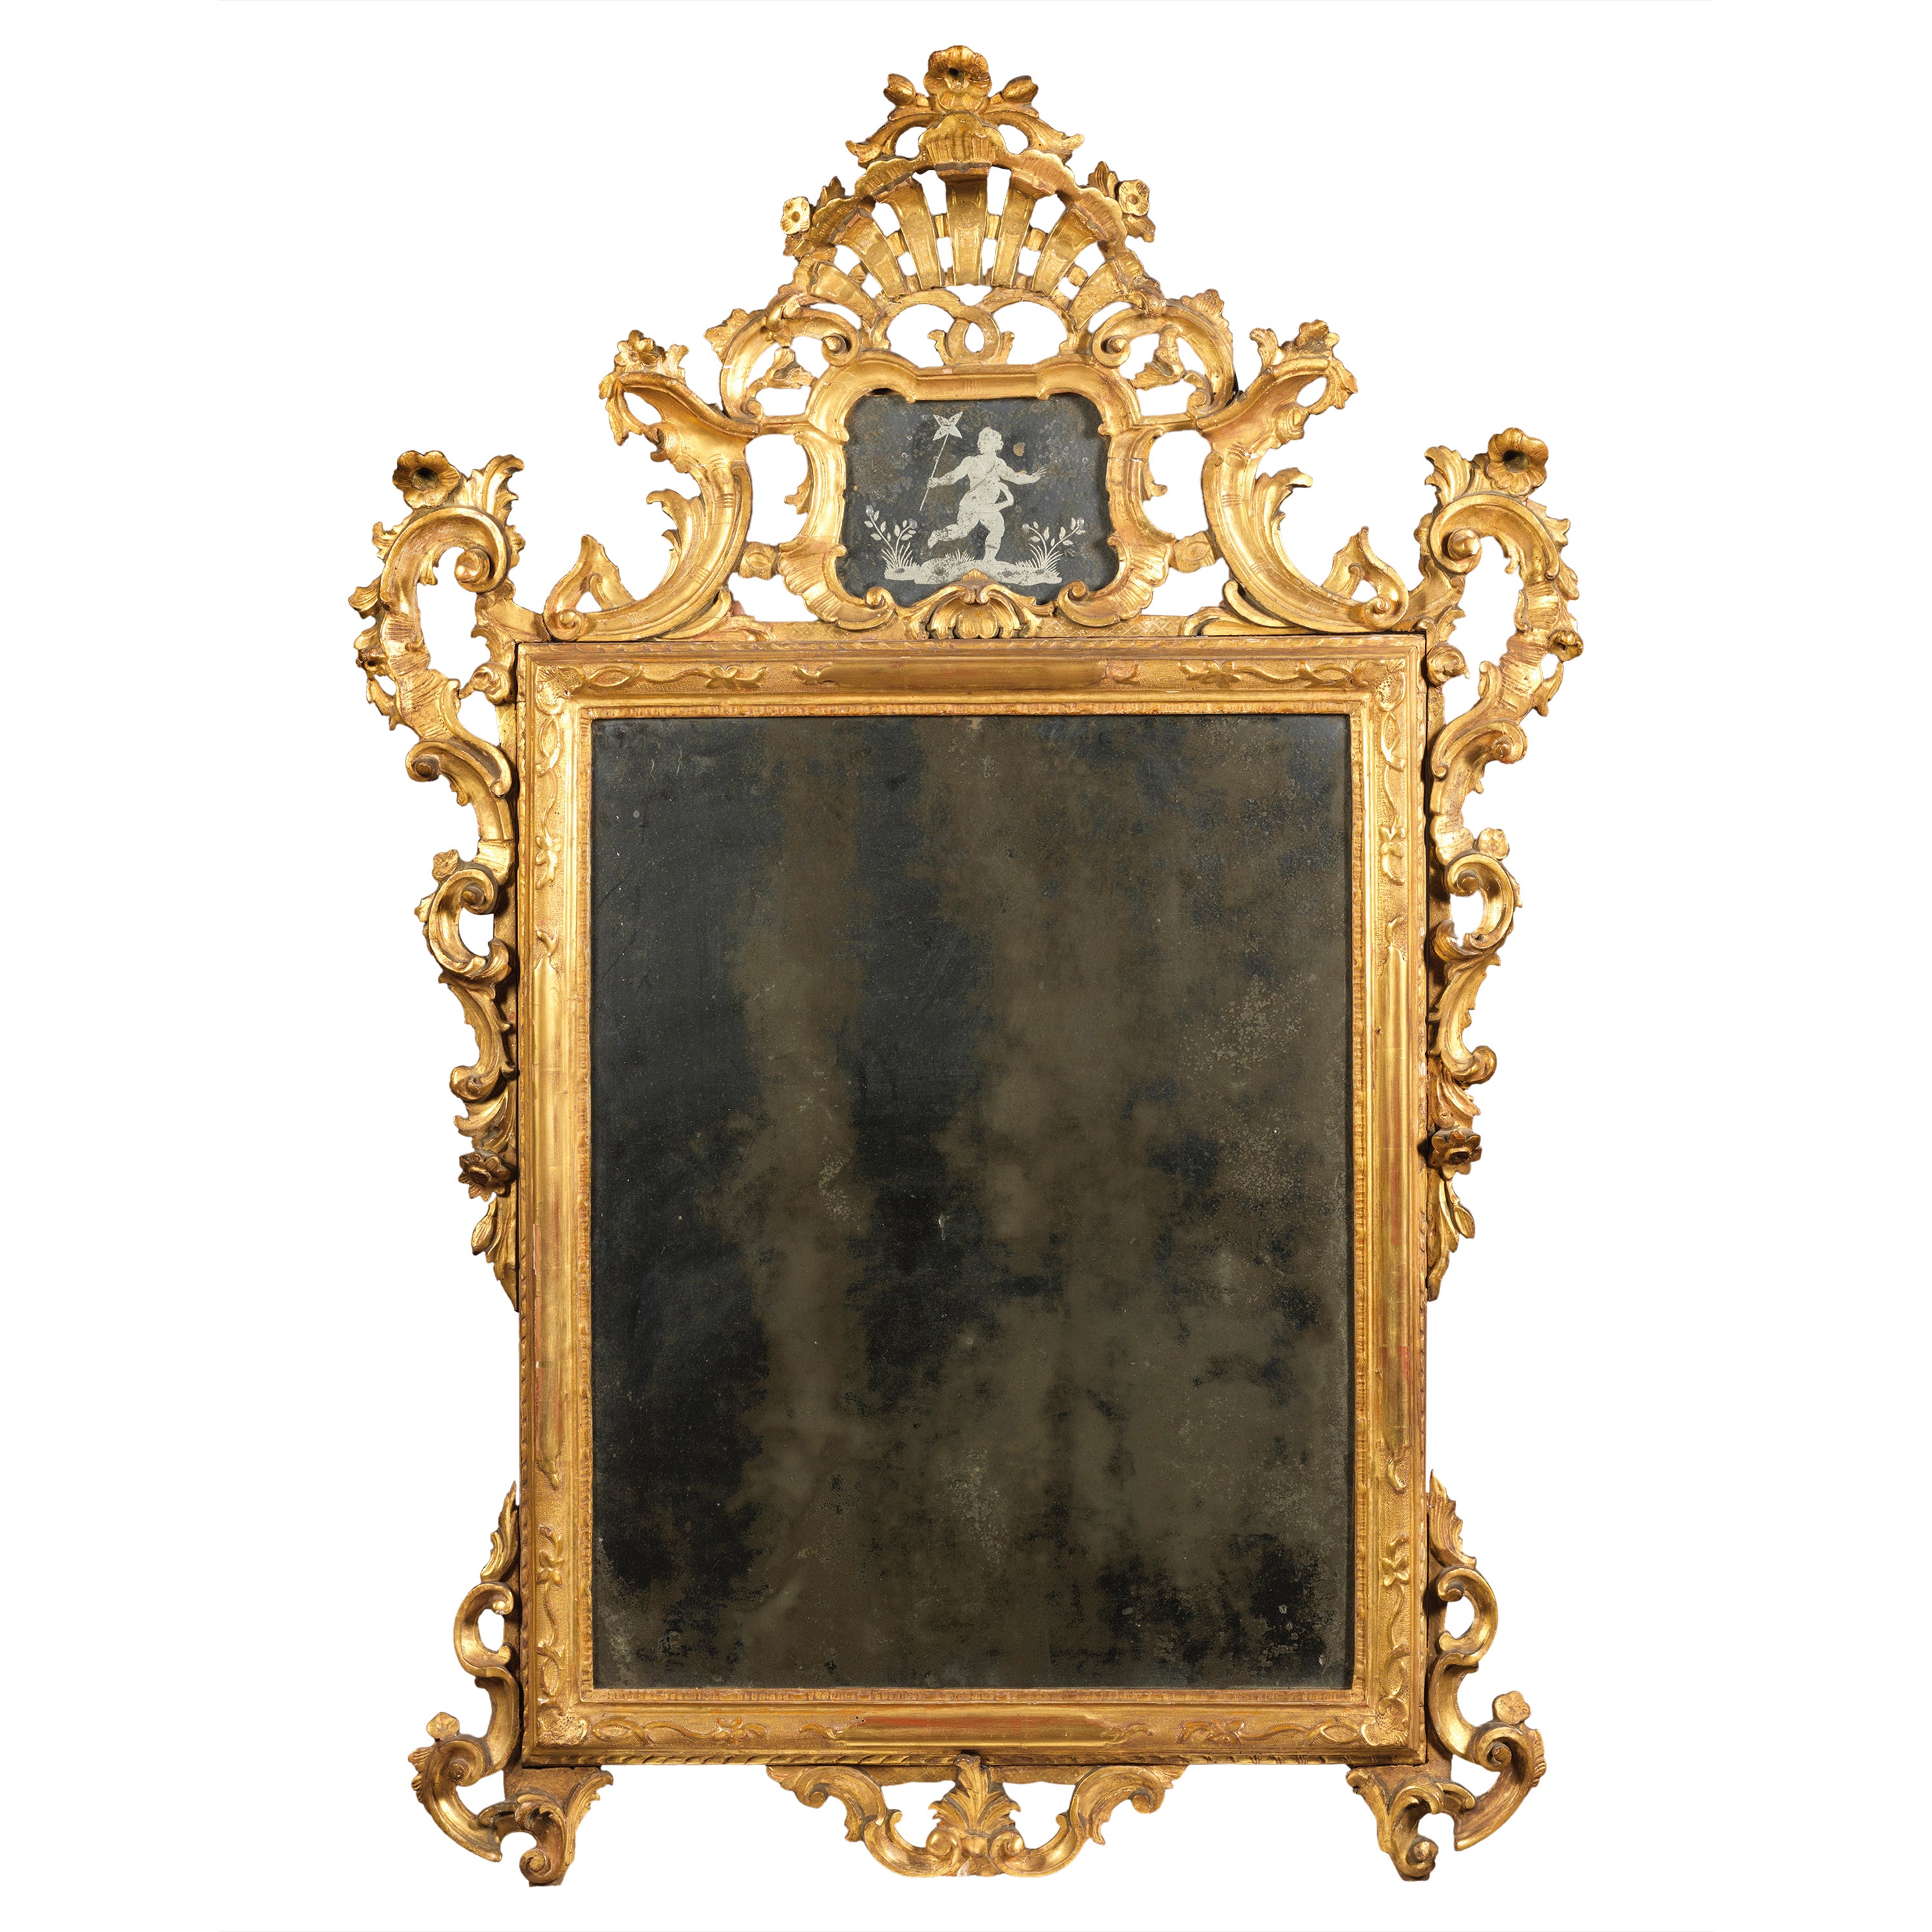 Grand miroir vénitien du 17e siècle